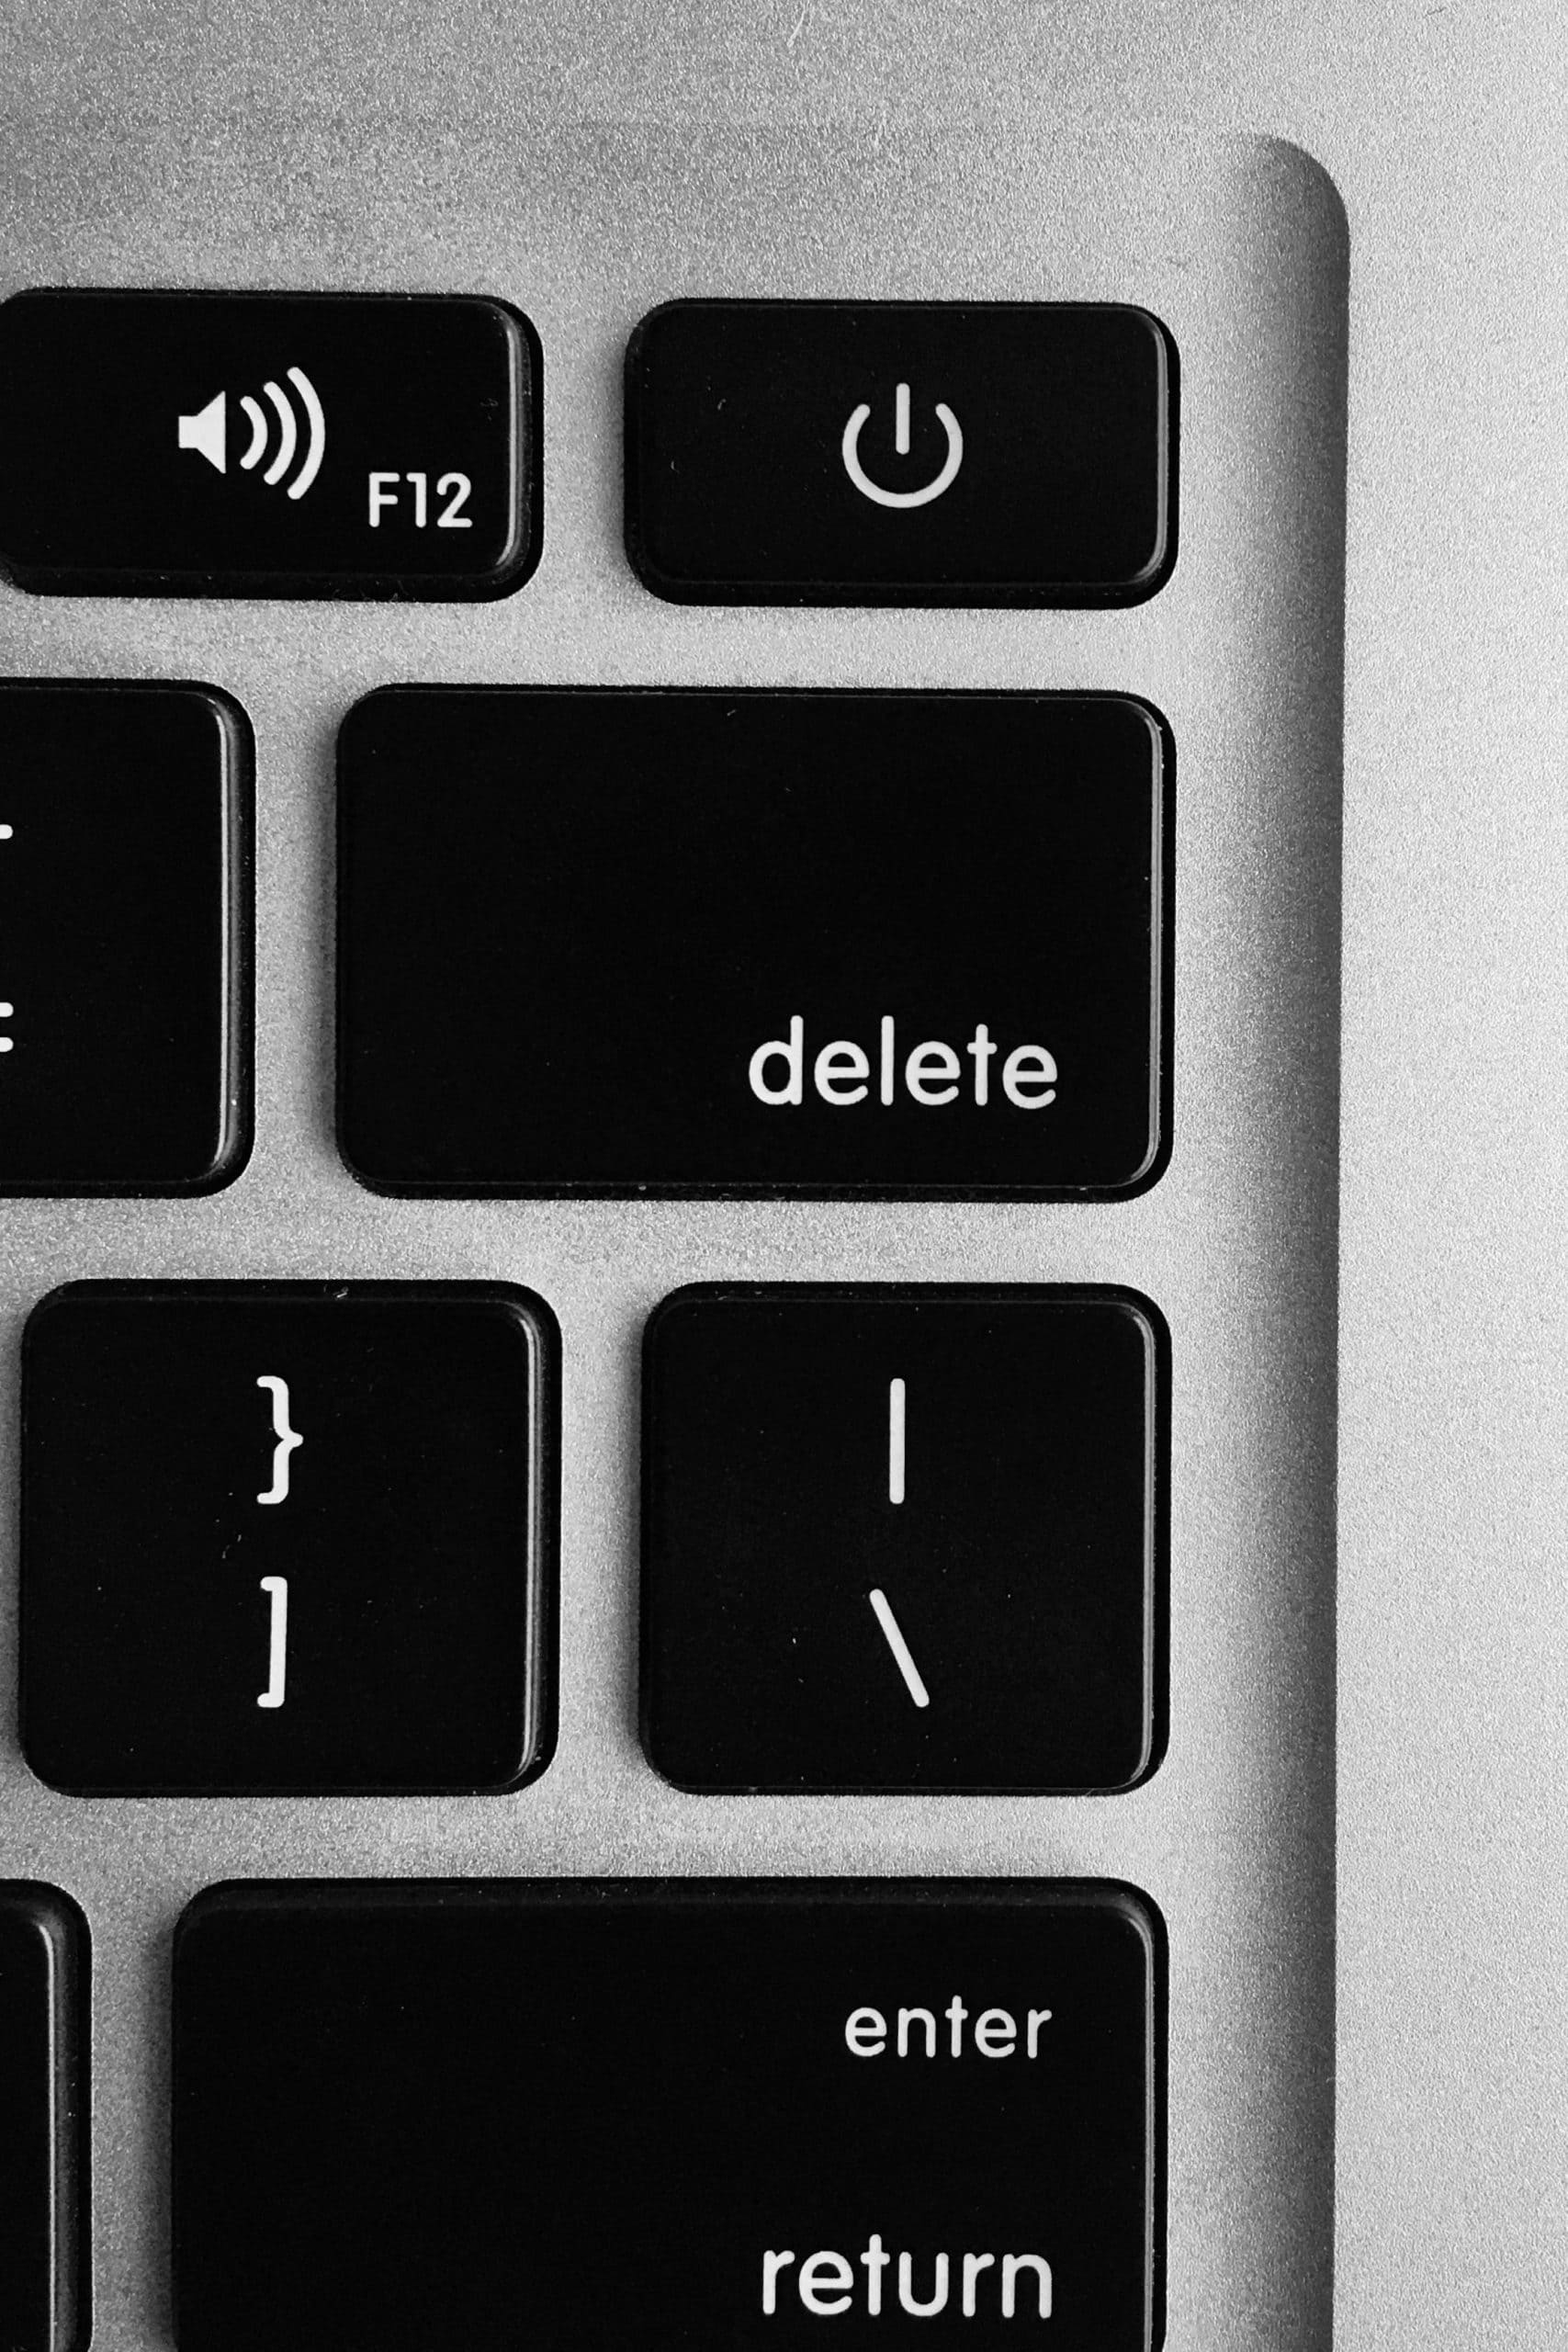 Should you delete old blog posts?